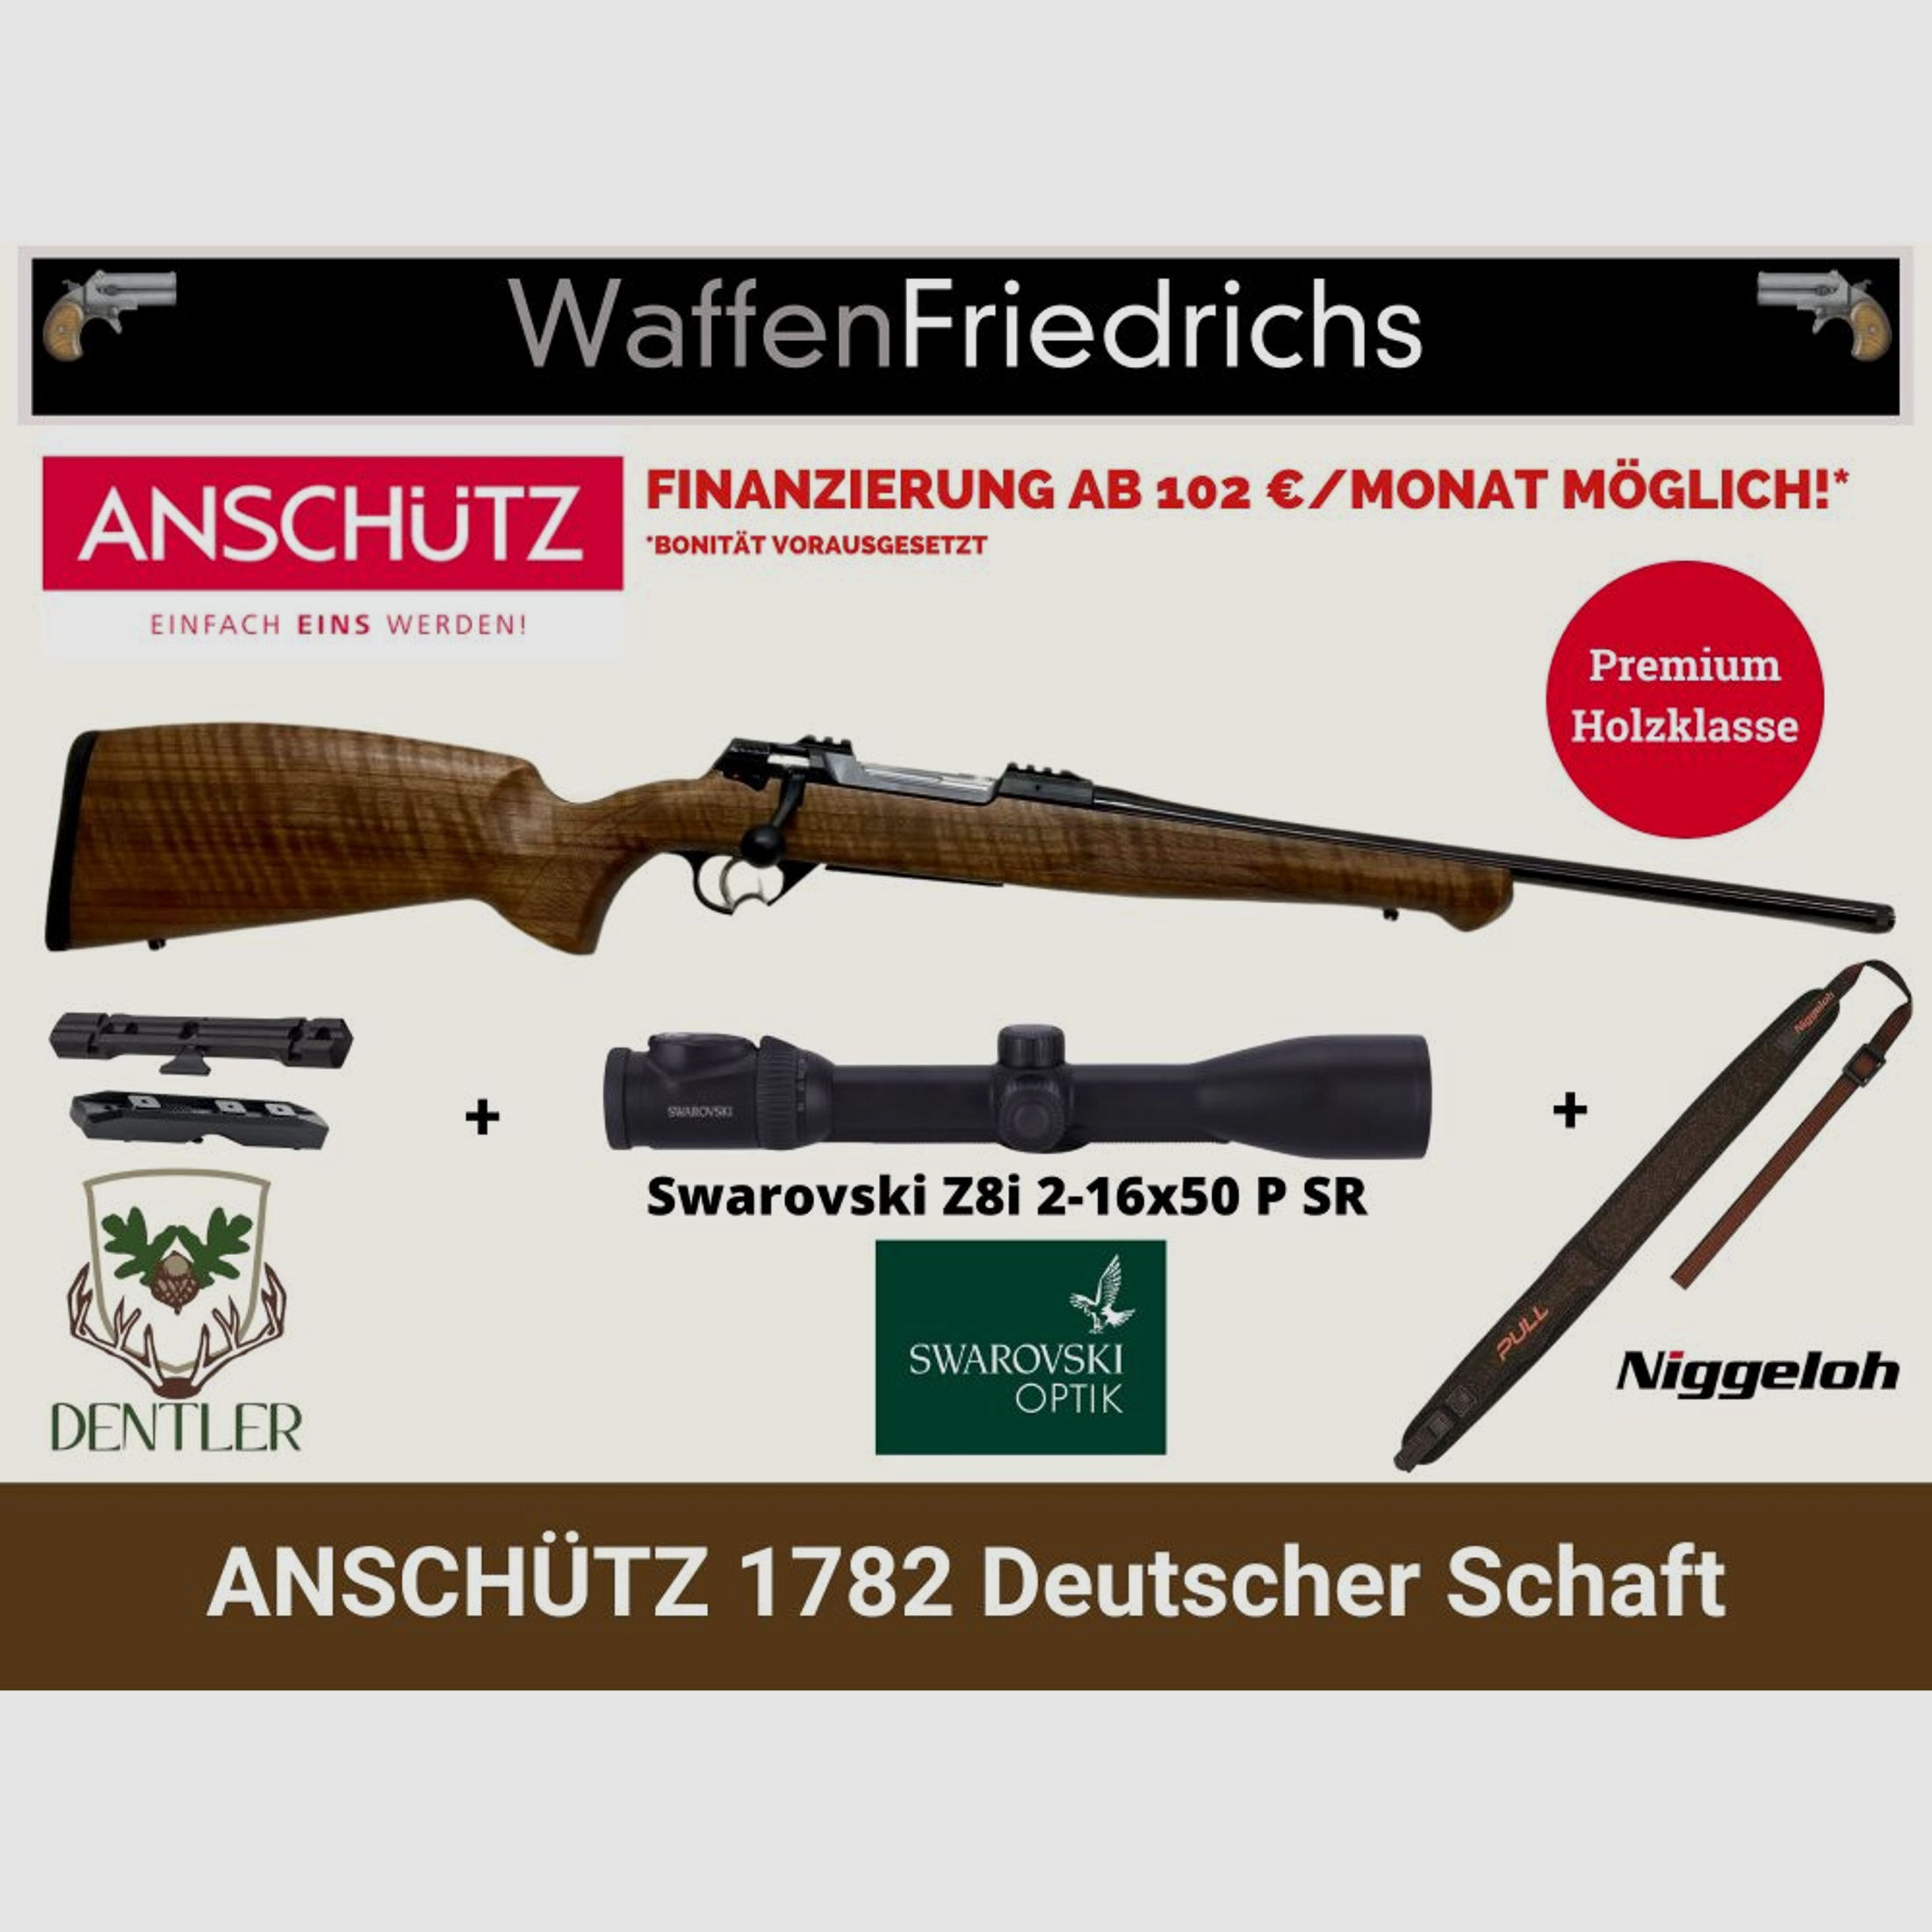 Anschütz	 1782 Deutscher Schaft | Komplett Set "Keiler-Ruh" - Waffen Friedrichs